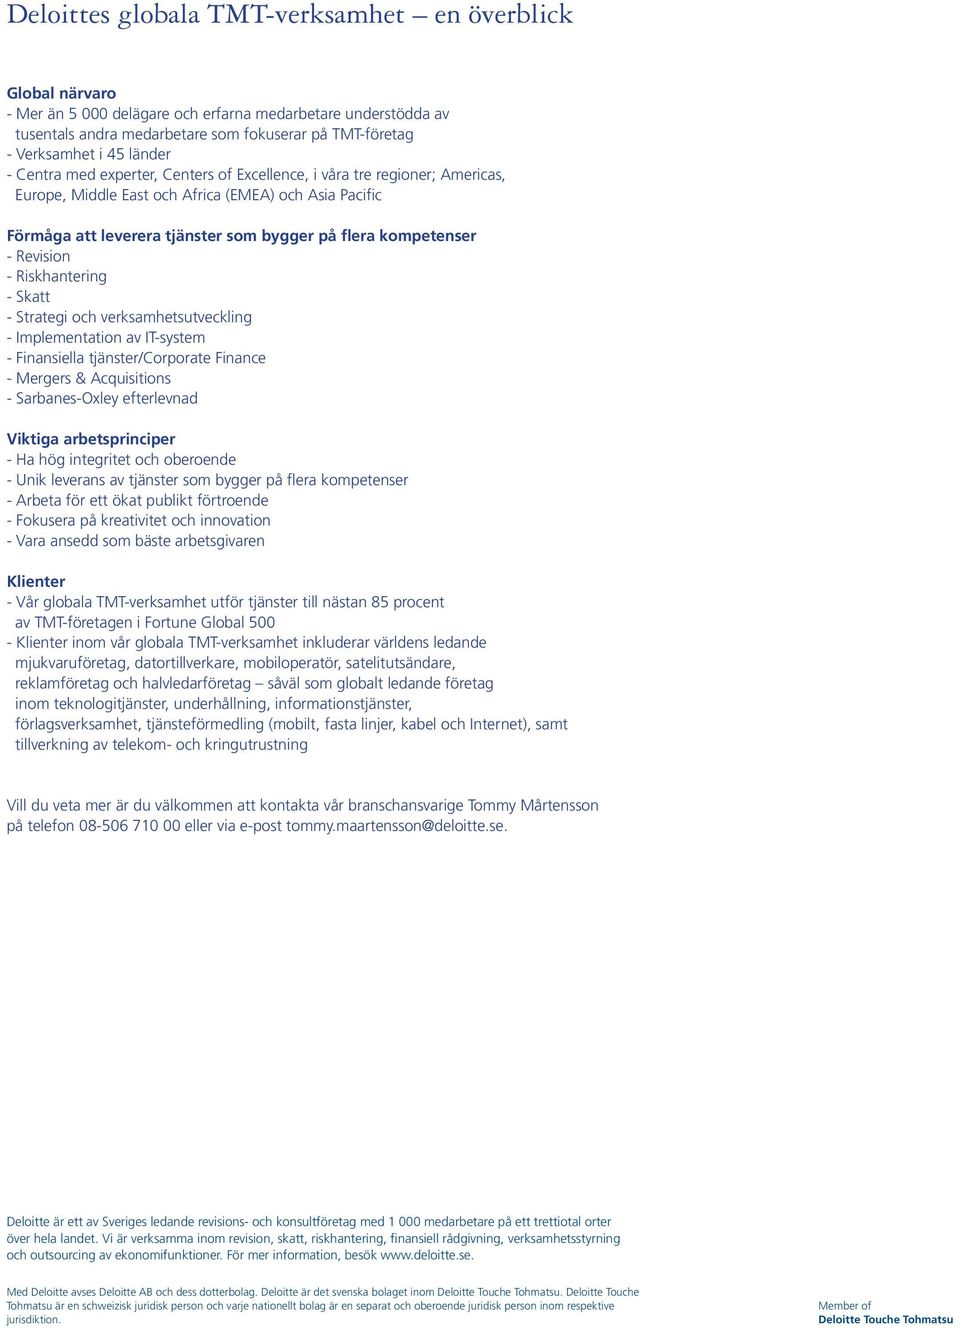 kompetenser - Revision - Riskhantering - Skatt - Strategi och verksamhetsutveckling - Implementation av IT-system - Finansiella tjänster/corporate Finance - Mergers & Acquisitions - Sarbanes-Oxley